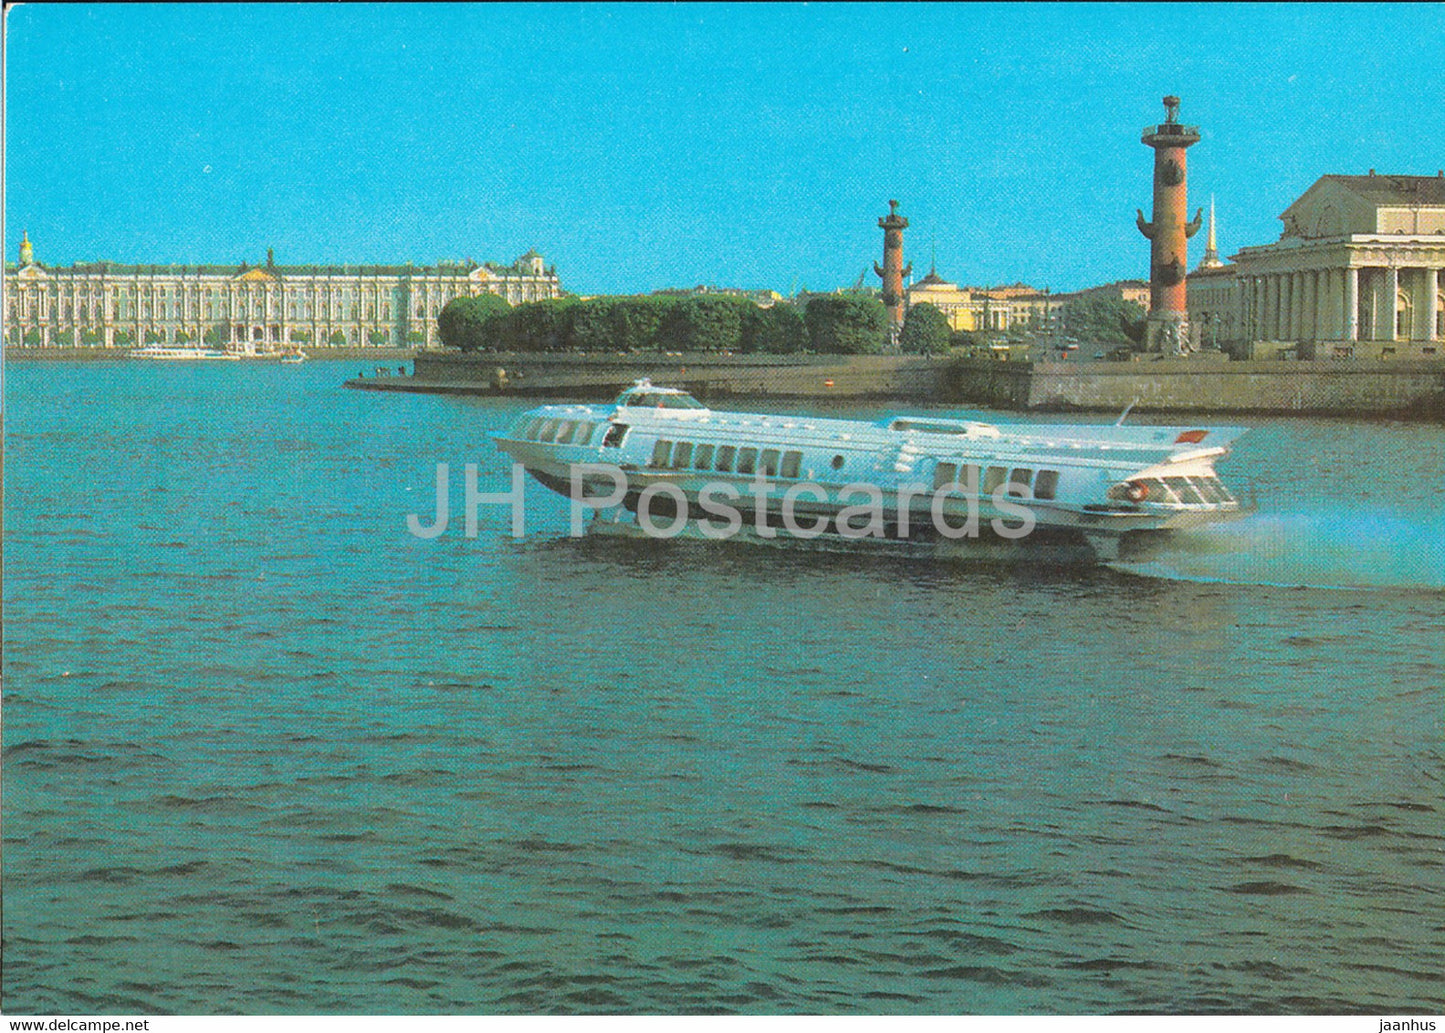 Leningrad - St Petersburg - spit of Vasilievsky Island - ship Raketa - postal stationery - 1982 - Russia USSR - unused - JH Postcards